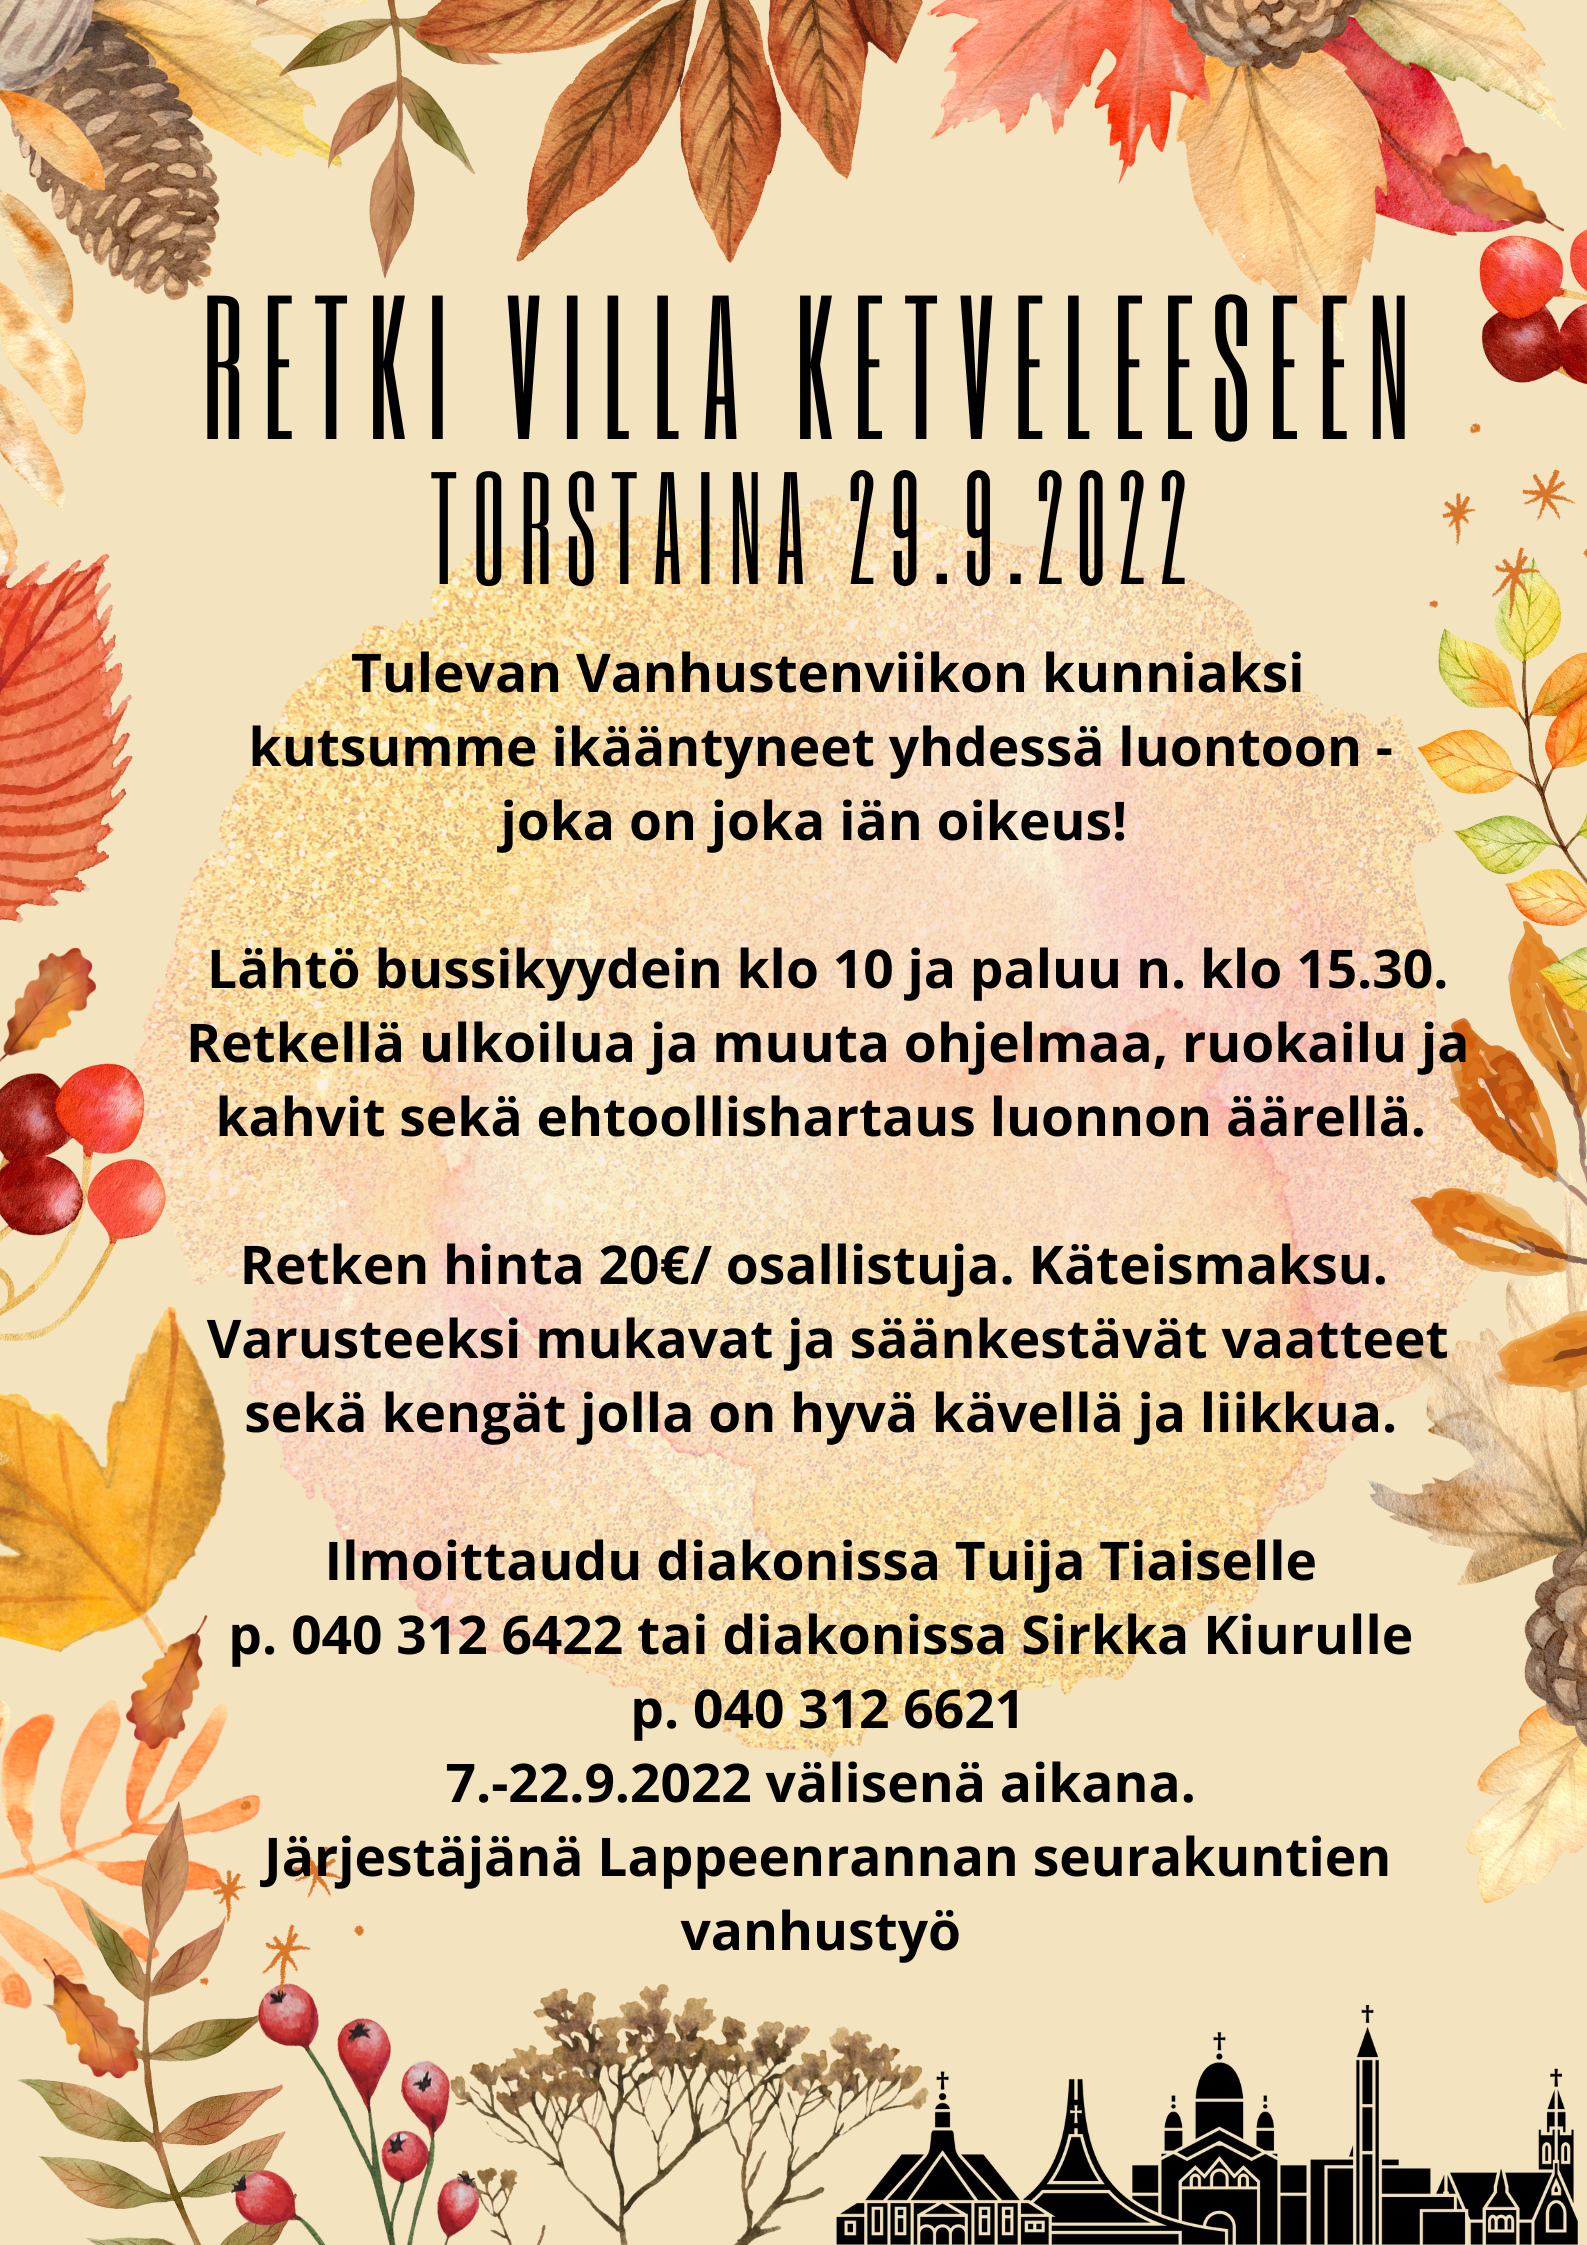 Retkimainos syysretkestä Villa Ketveleeseen 29.9.2022